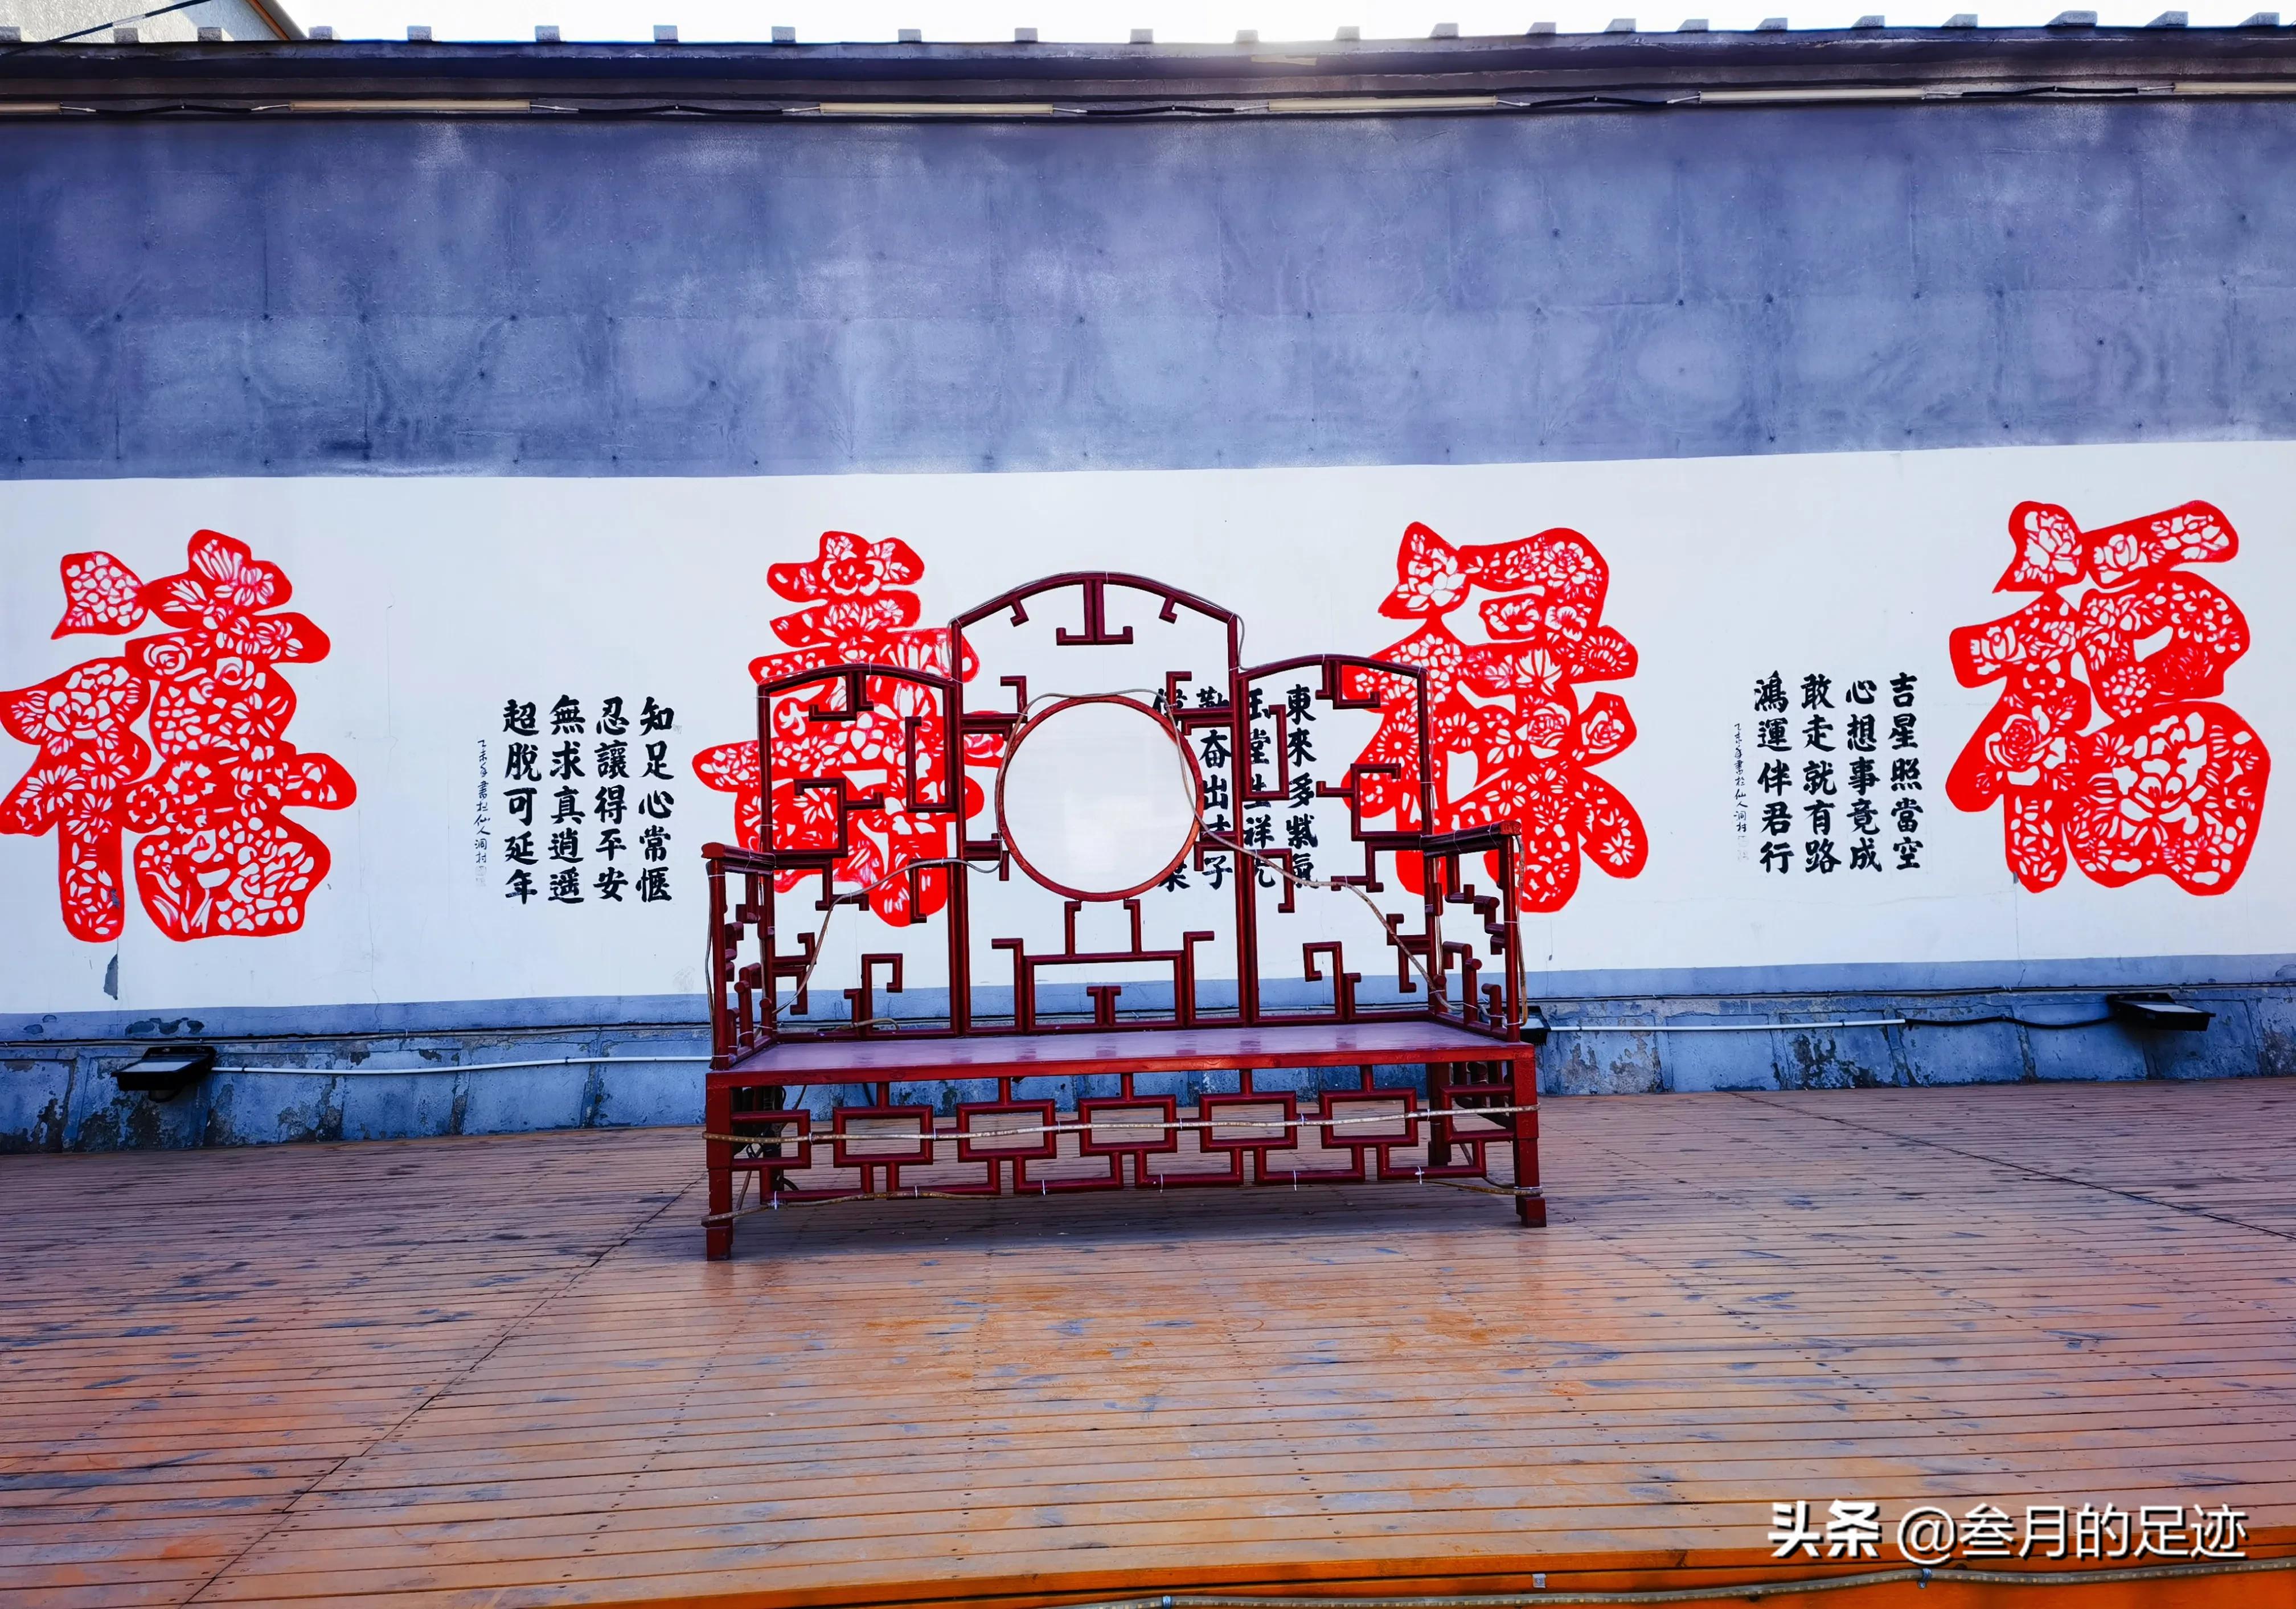 北京昌平，自驾一日游攻略，燕平八景之一，赏美景，吃素斋